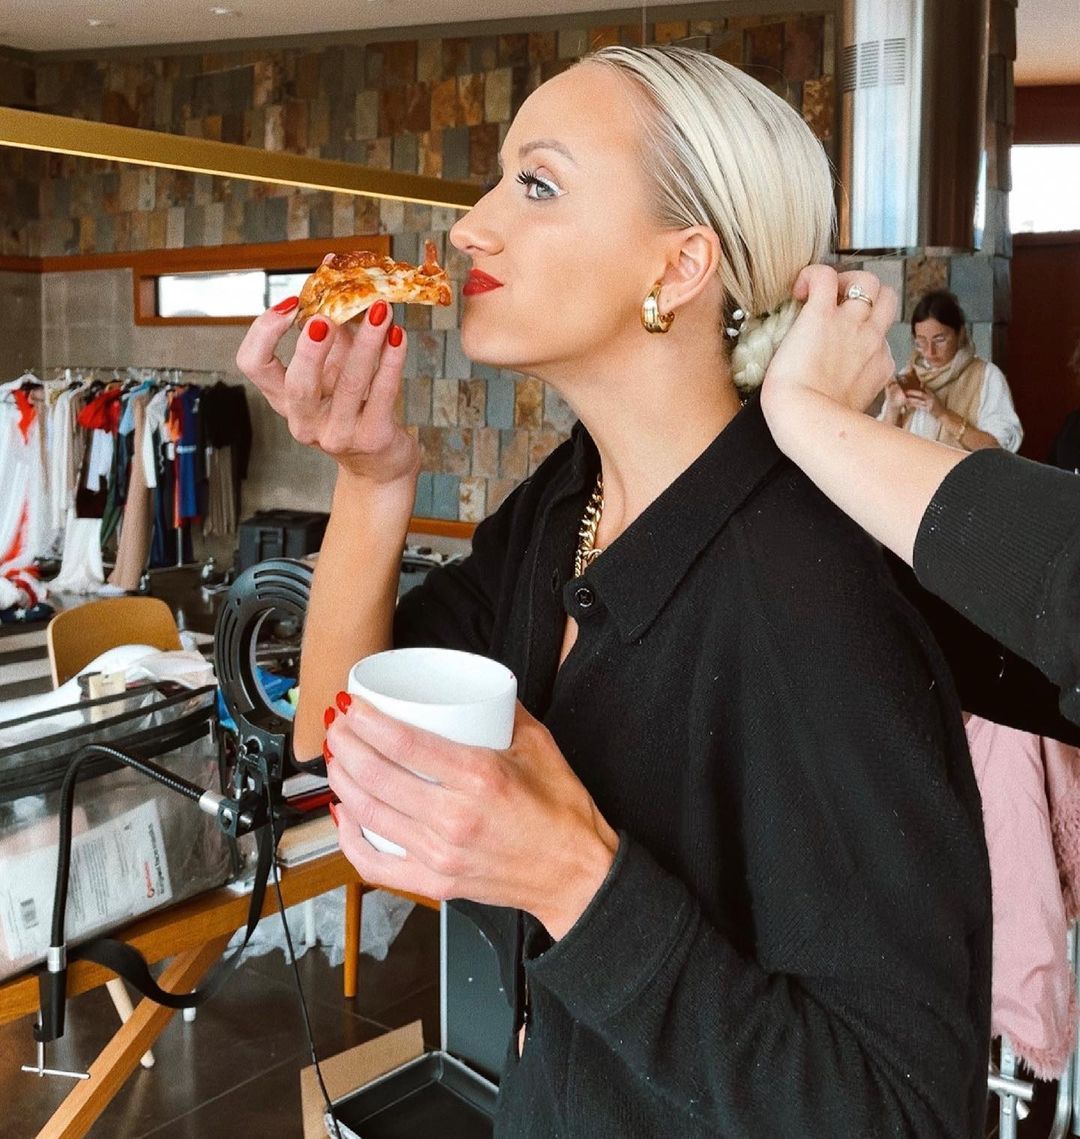 Nastia Liukin snacking on pizza